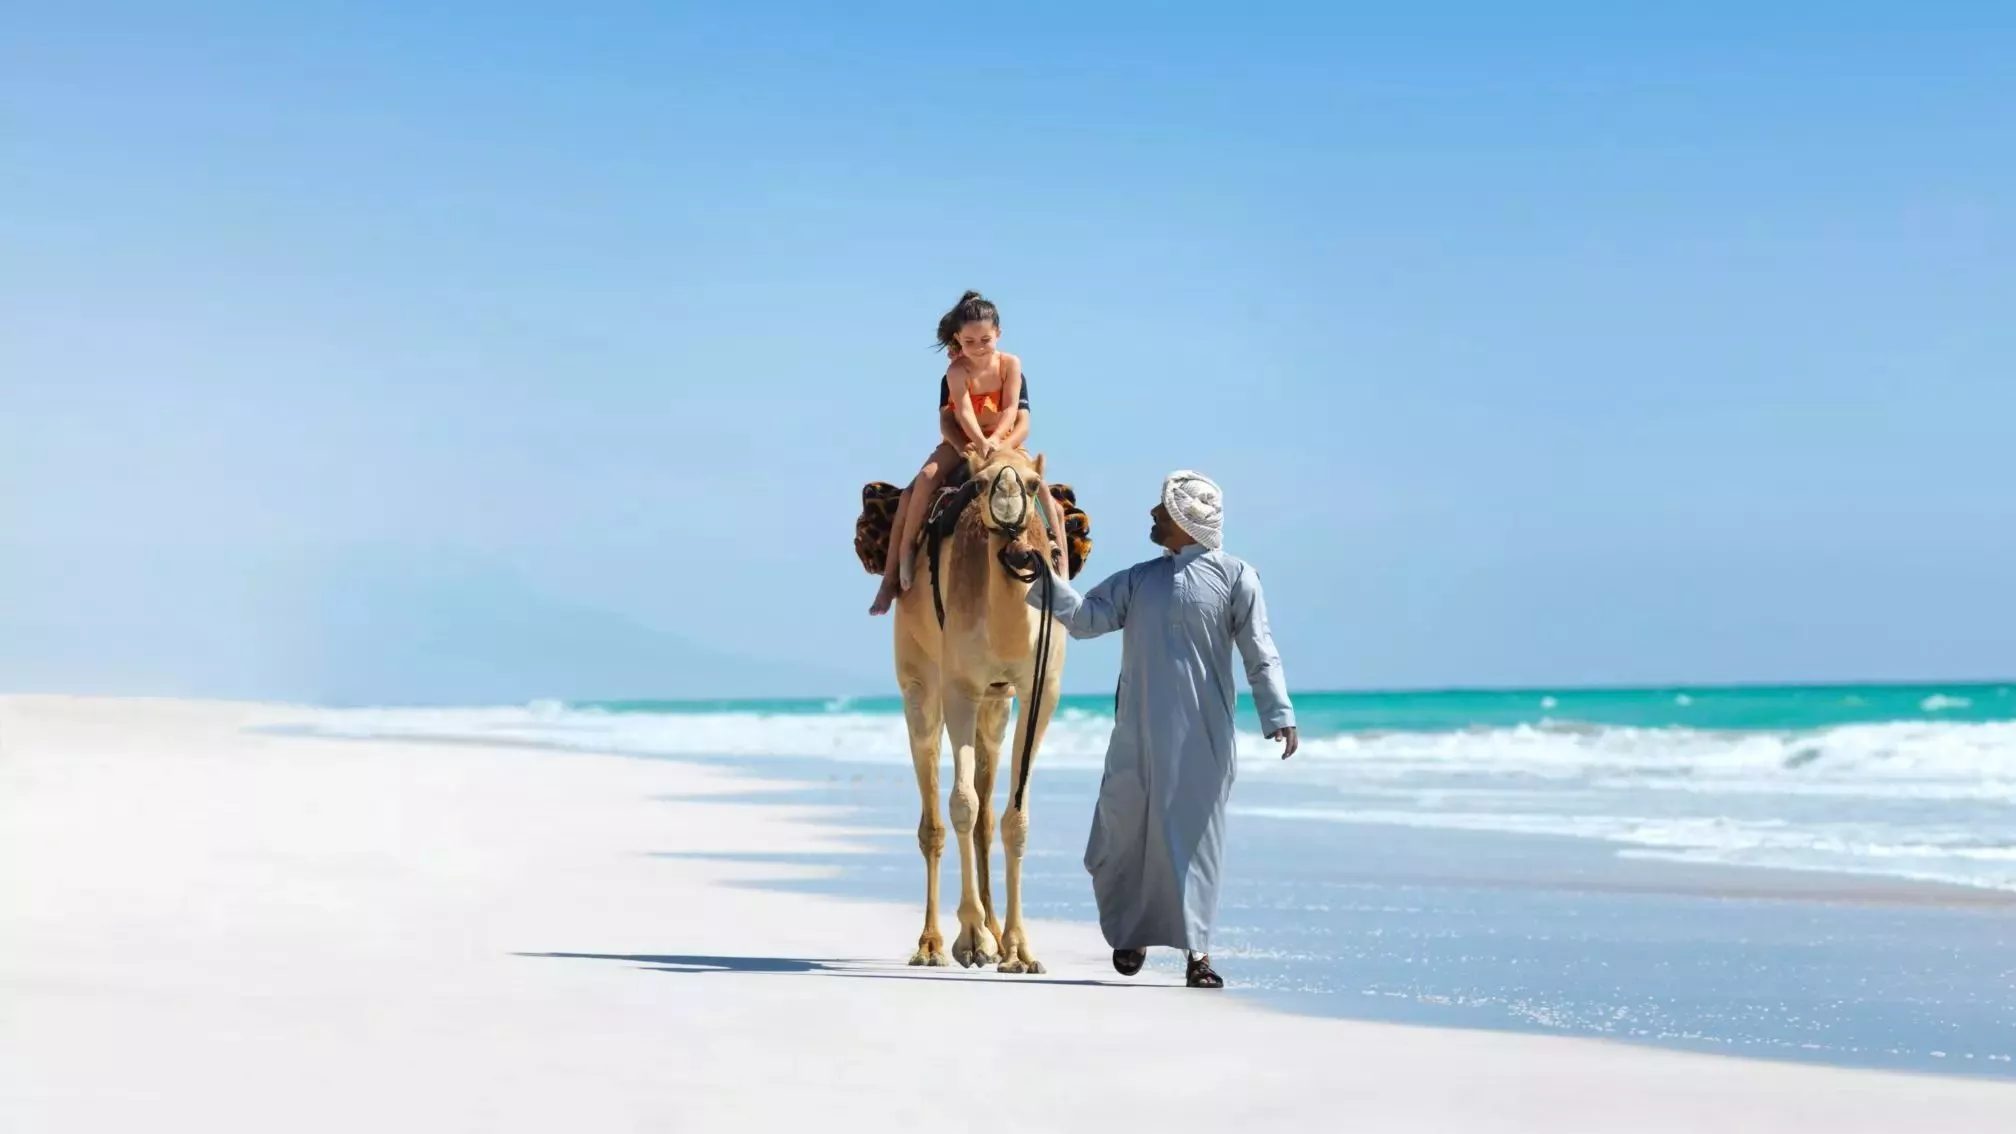 Familienreise Oman1 2016x1134 1 - Luxusreisen mit Kindern